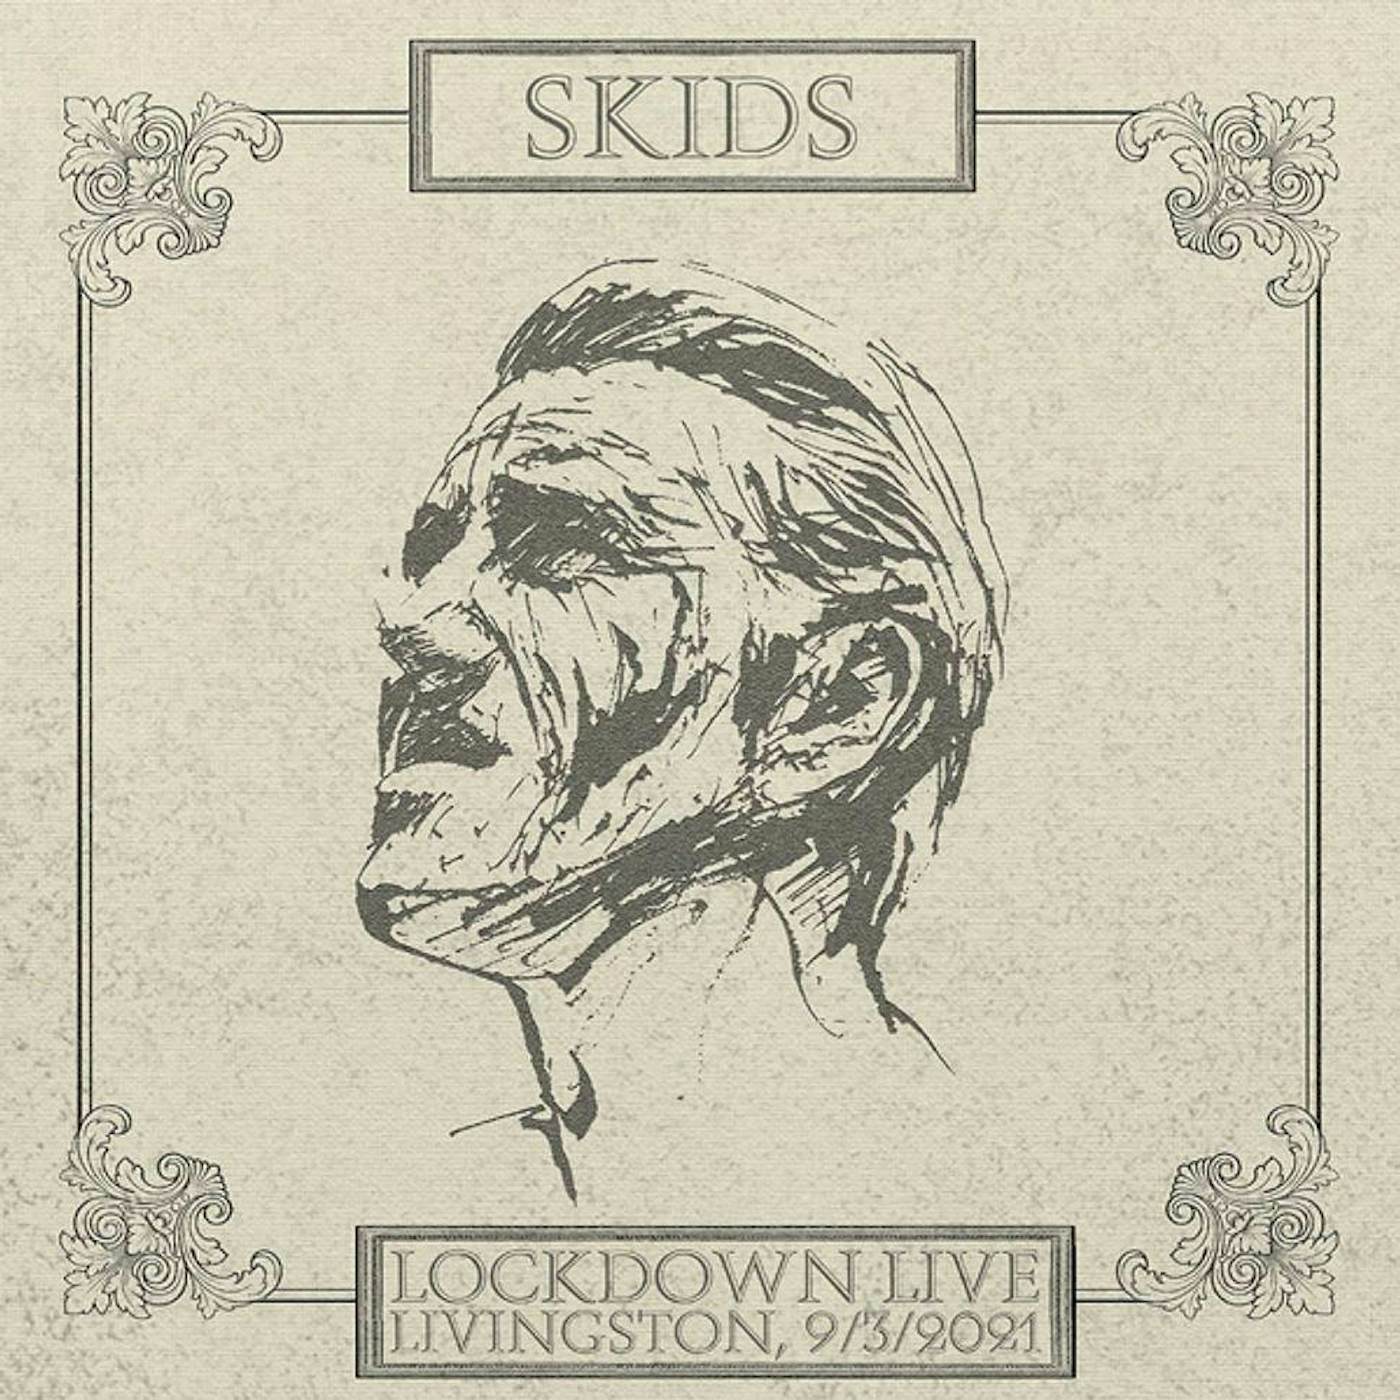 Skids Lockdown Live 2021 - Livingston (White) Vinyl Record